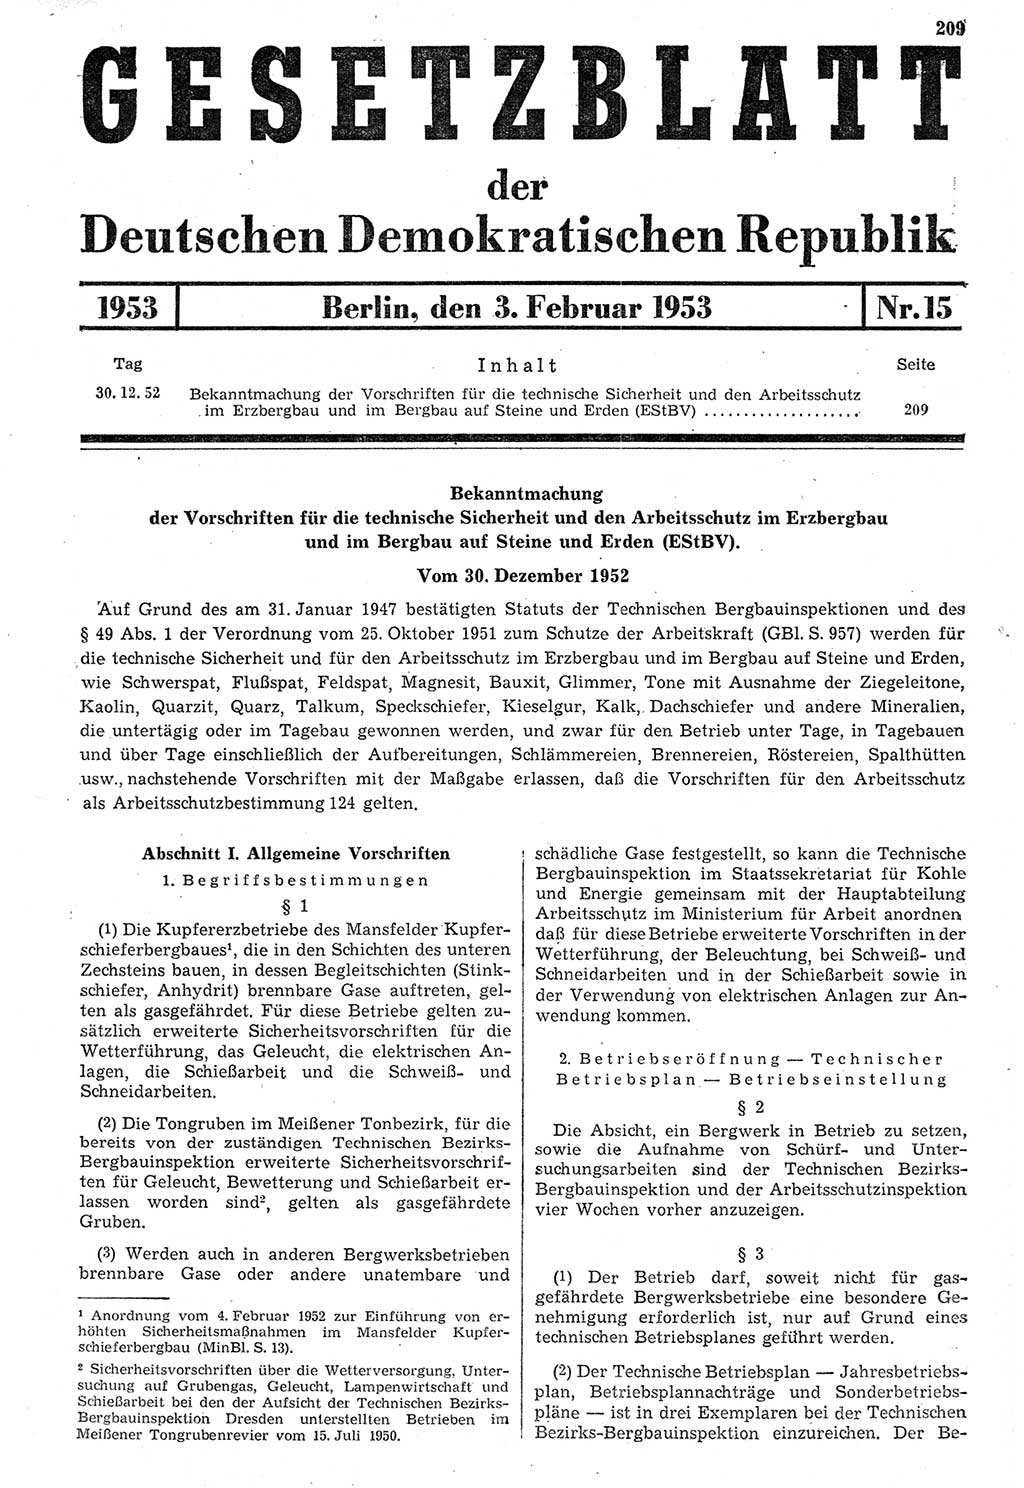 Gesetzblatt (GBl.) der Deutschen Demokratischen Republik (DDR) 1953, Seite 209 (GBl. DDR 1953, S. 209)